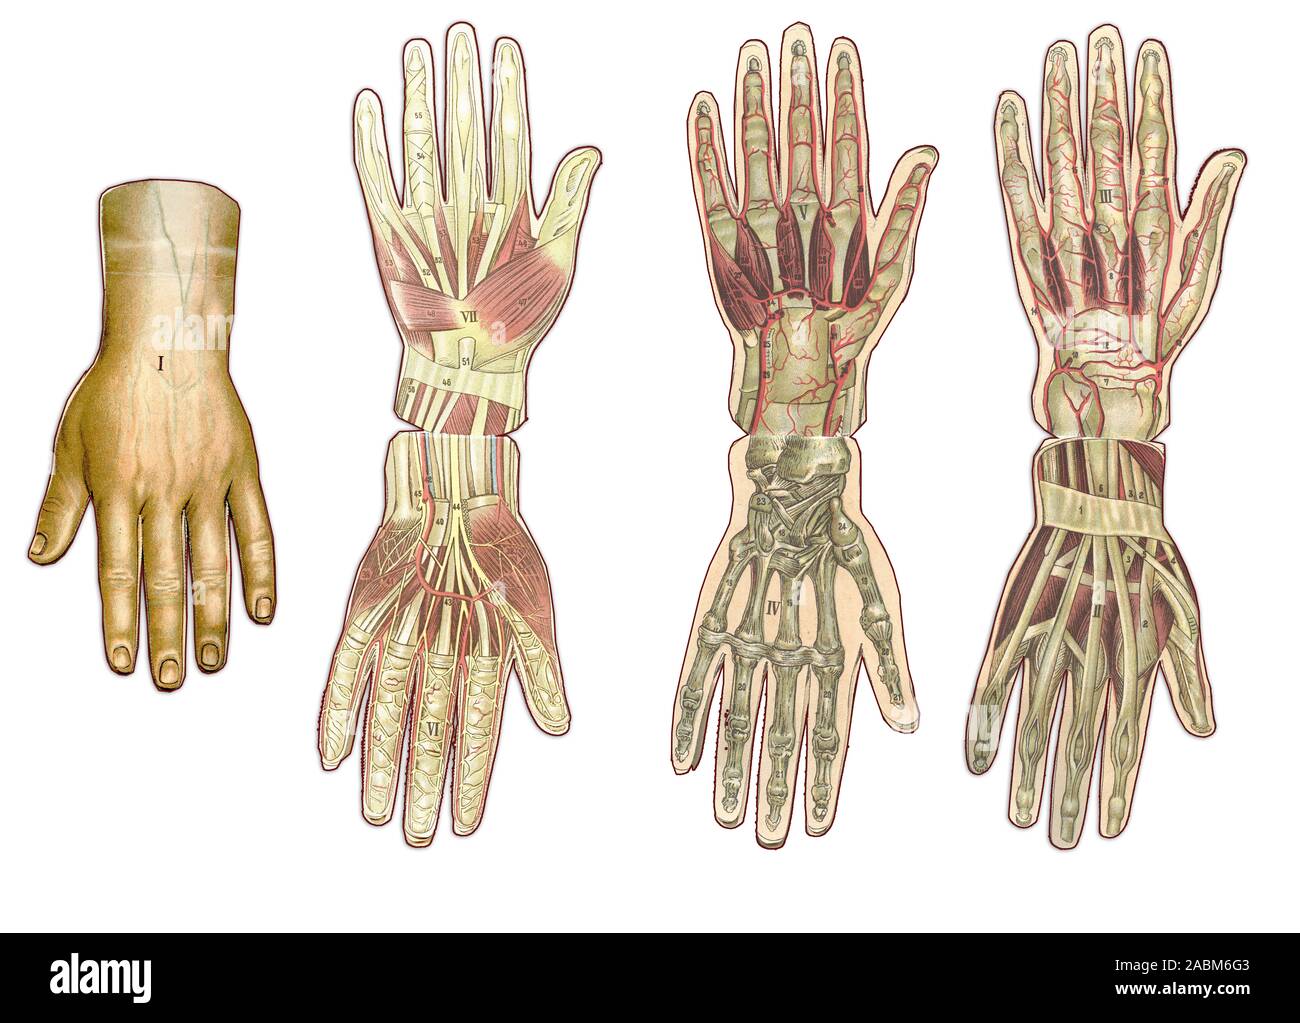 La médecine et les soins de l'illustre le tableau, la main de l'anatomie : Peau et tissus ectodermaux, os, muscles nerfs, vaisseaux sanguins Banque D'Images